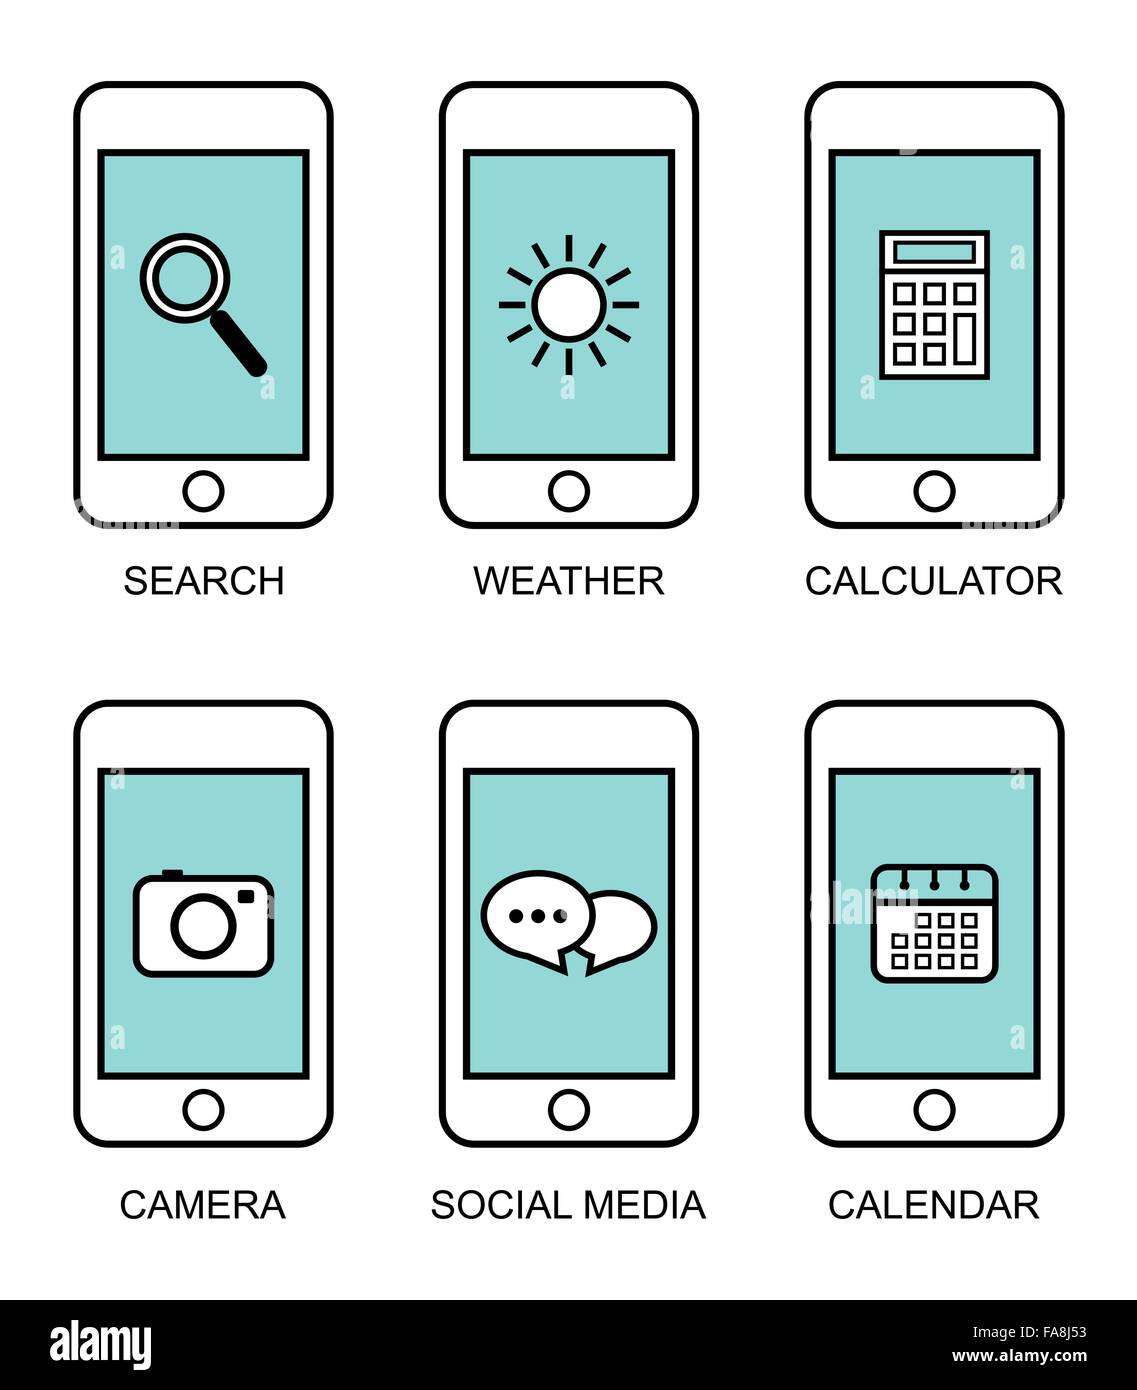 Flache Kontur moderne Smartphones mit verschiedenen Elementen der Benutzeroberfläche auf weißem Hintergrund Stock Vektor